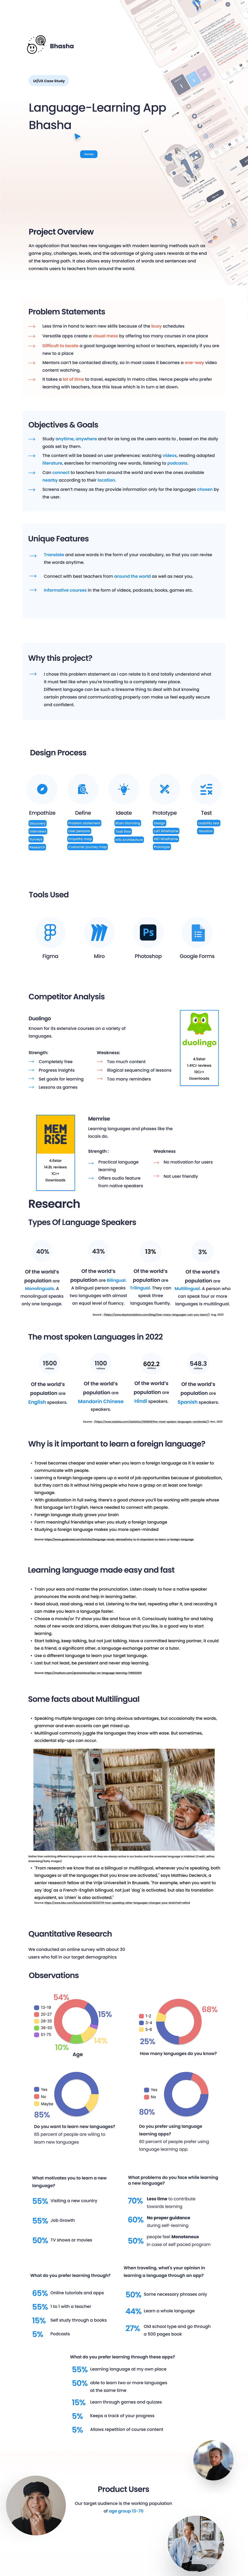 Language Learning UI ux